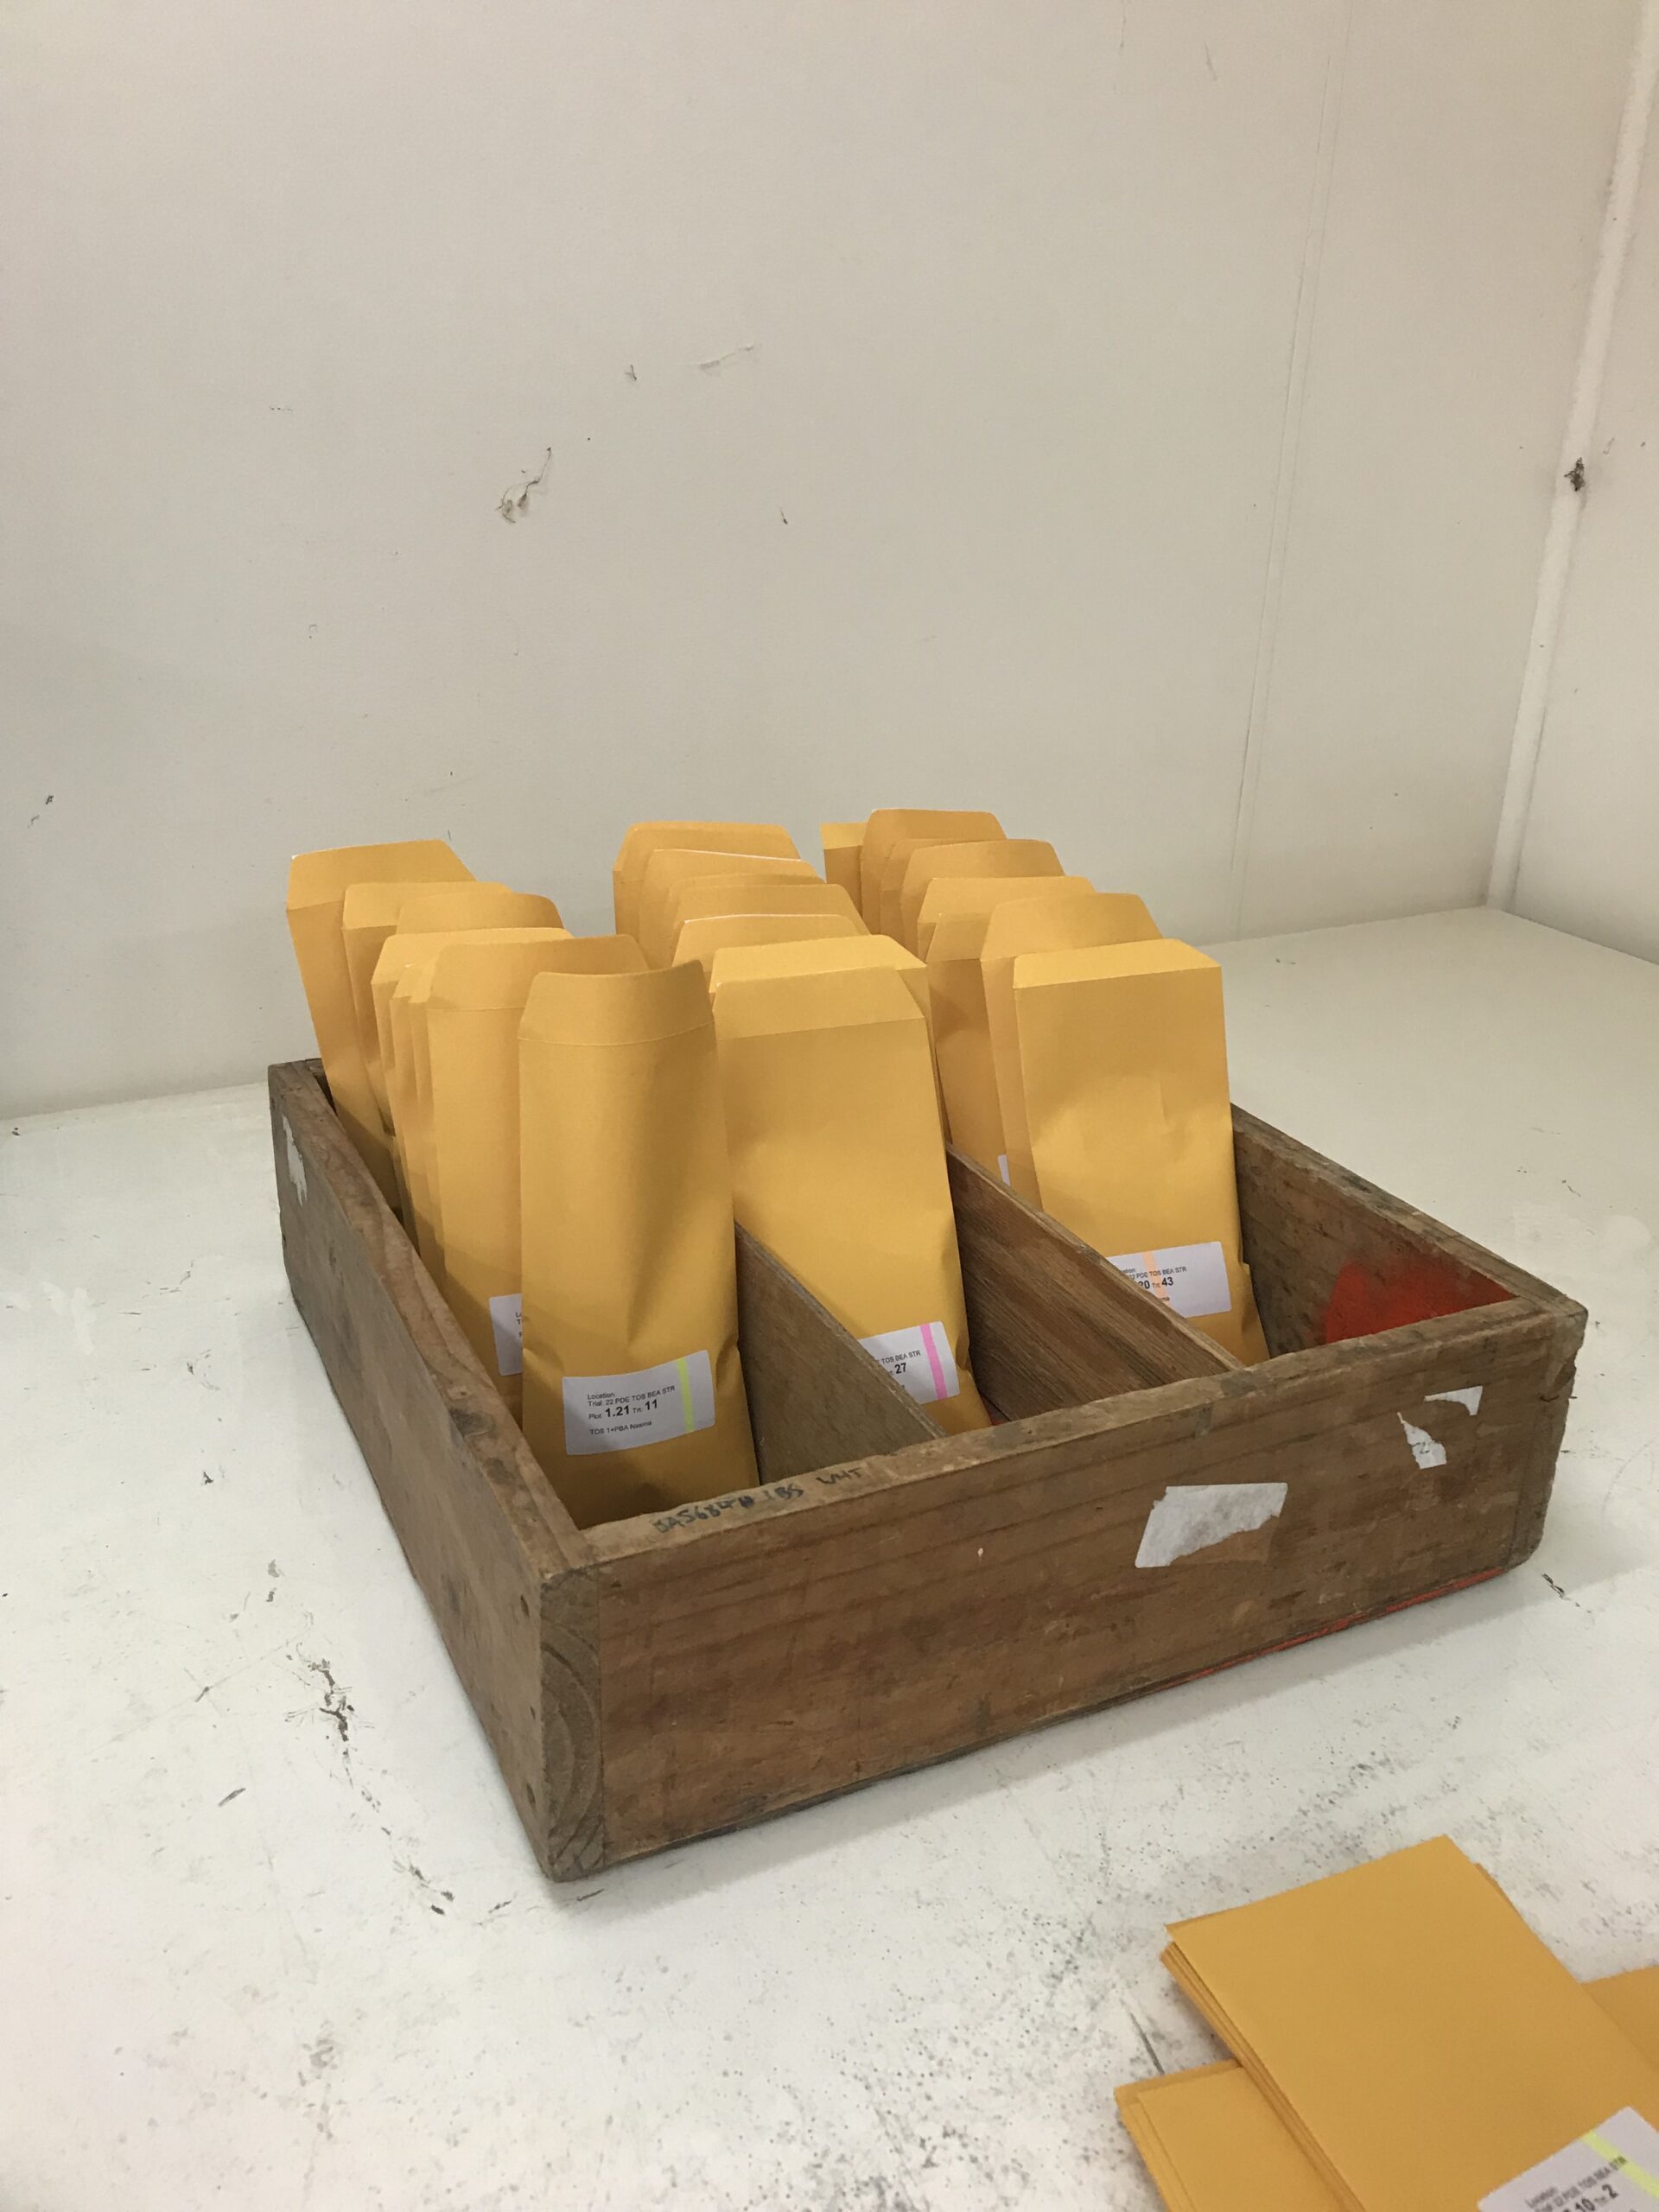 Seed envelopes in cartridge